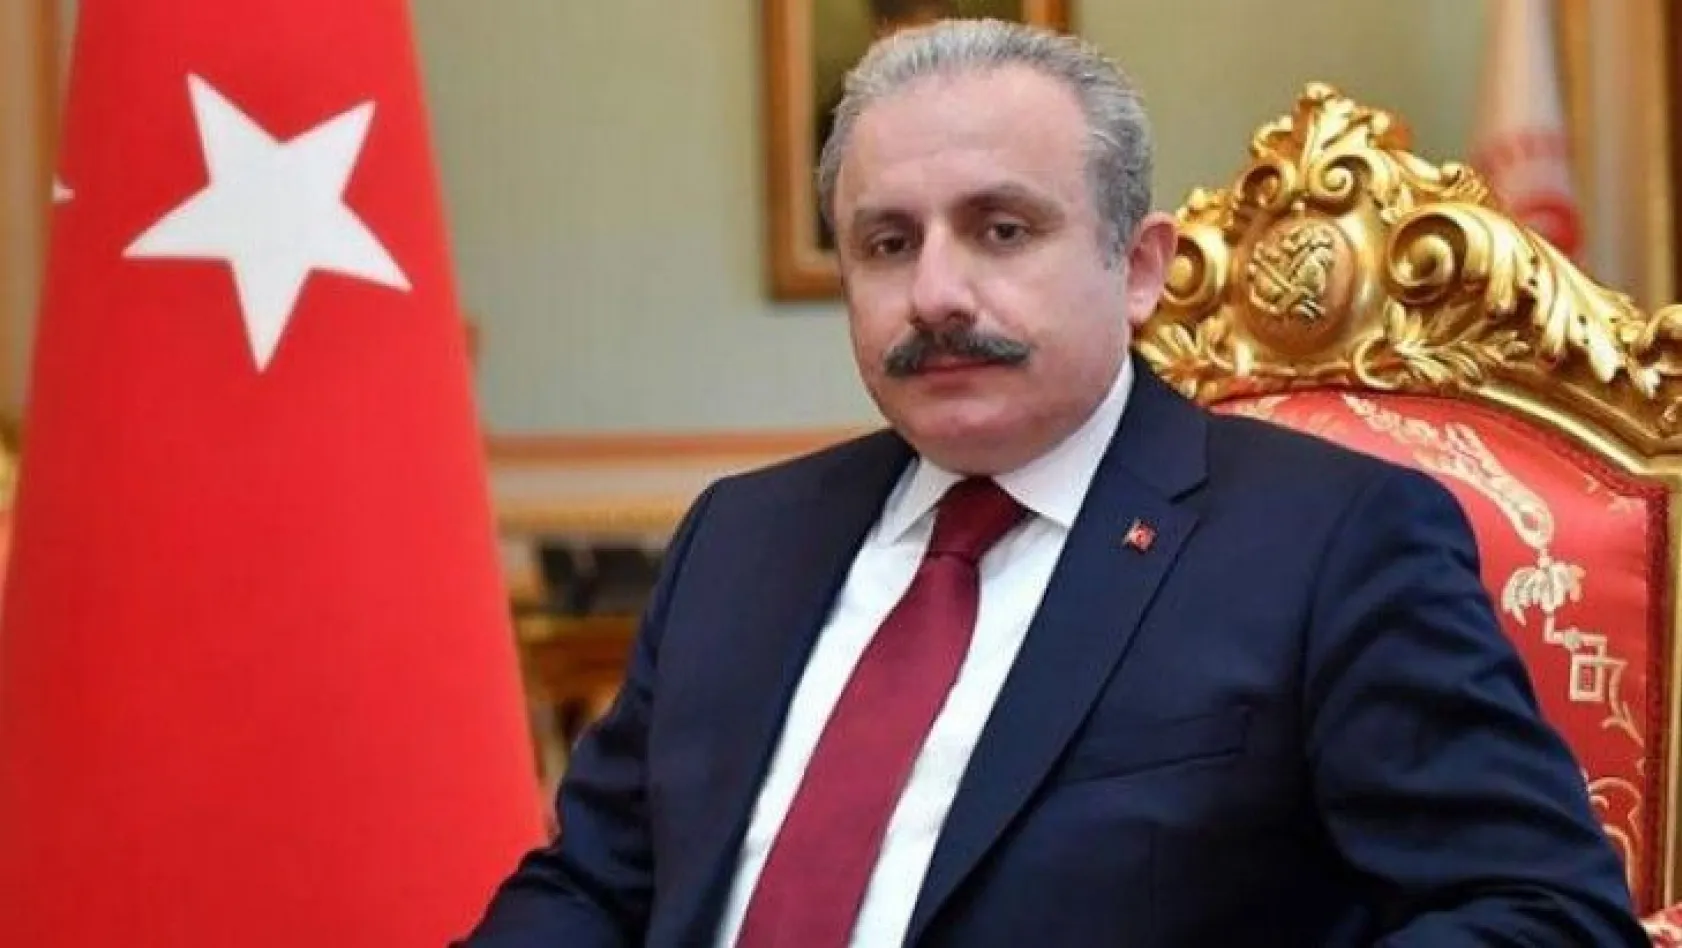 Meclis Başkanı Şentop'tan HDP'ye açılan kapatma davasına ilk yorum